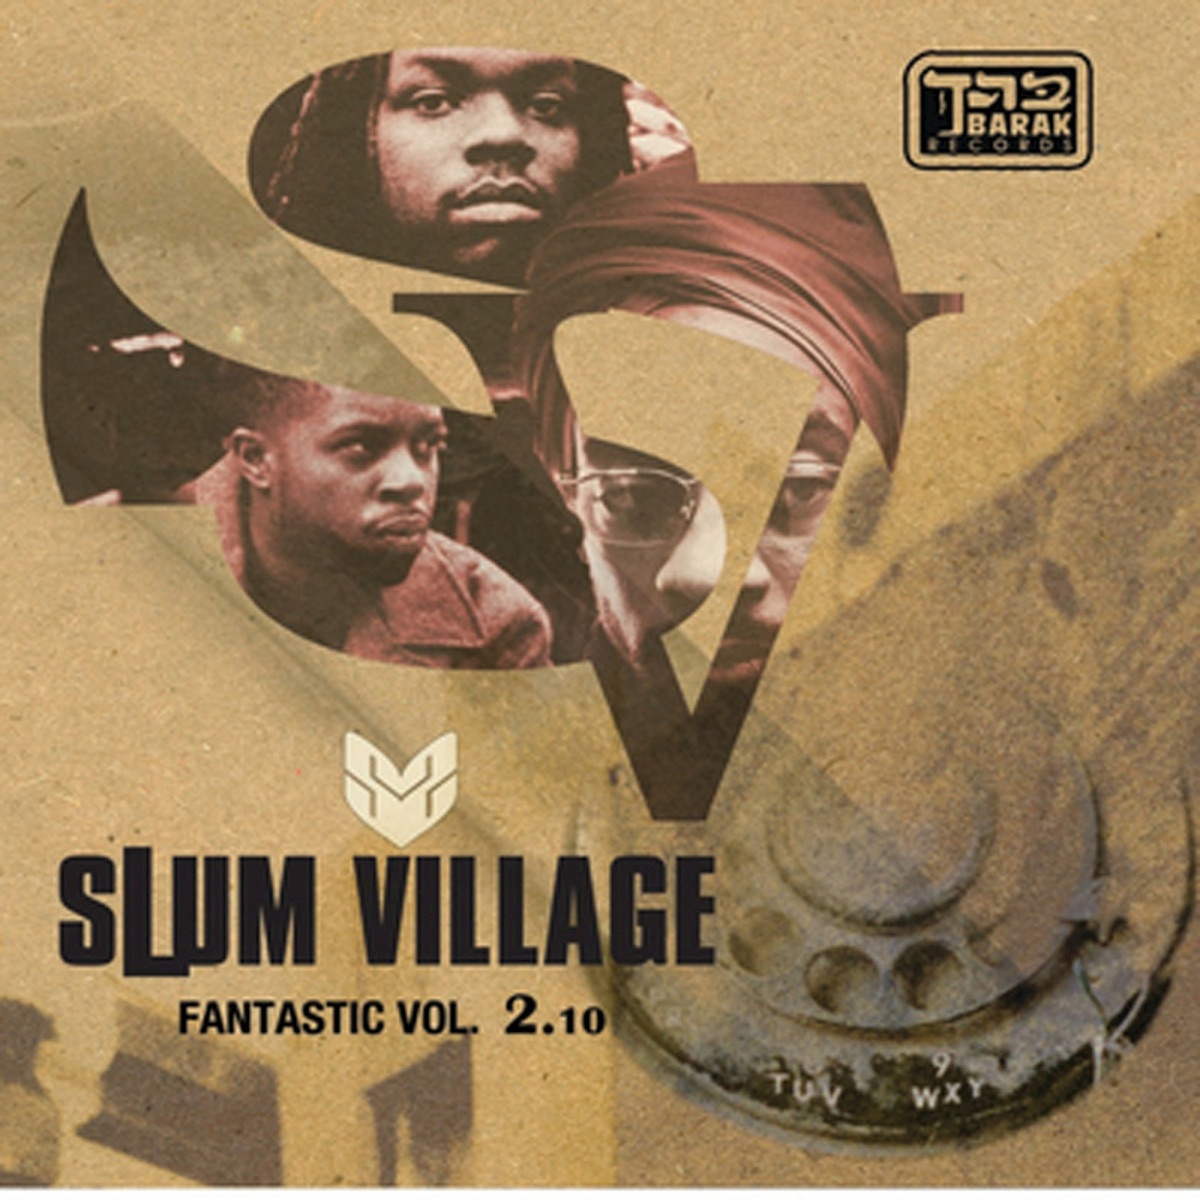 Fan-Tas-Tic, Vol. 1 by Slum Village on Apple Music